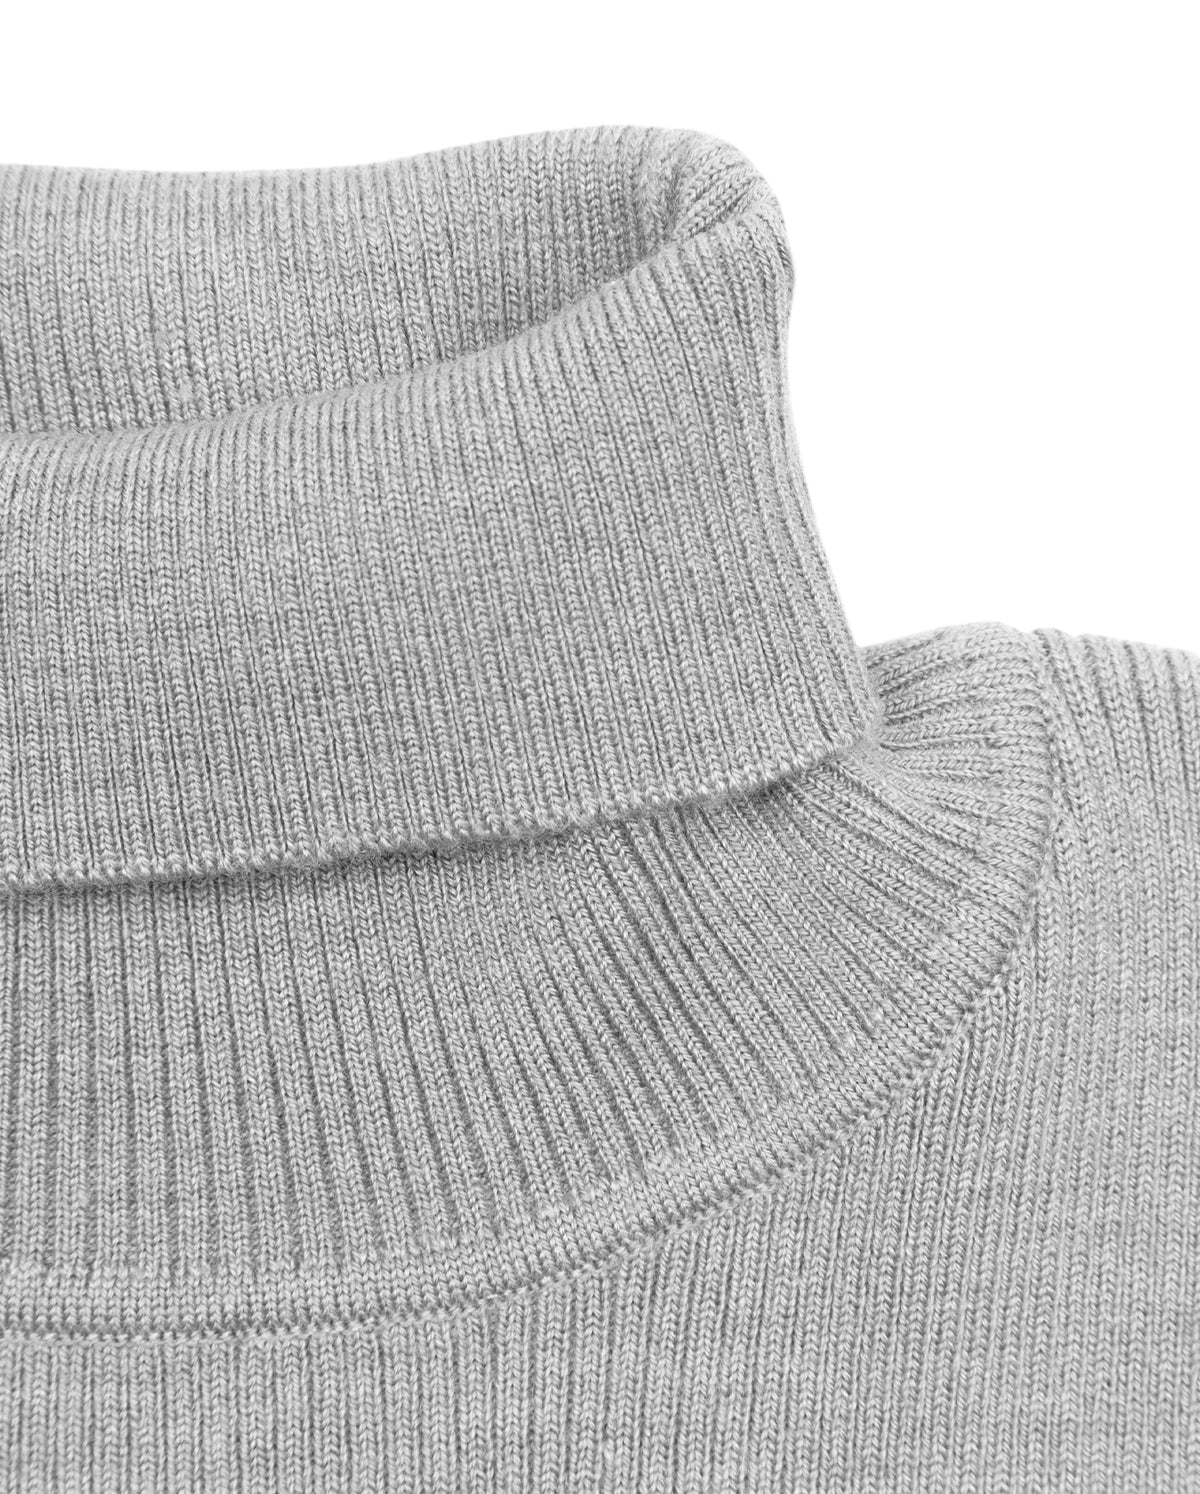 Basics Turtleneck Sweater